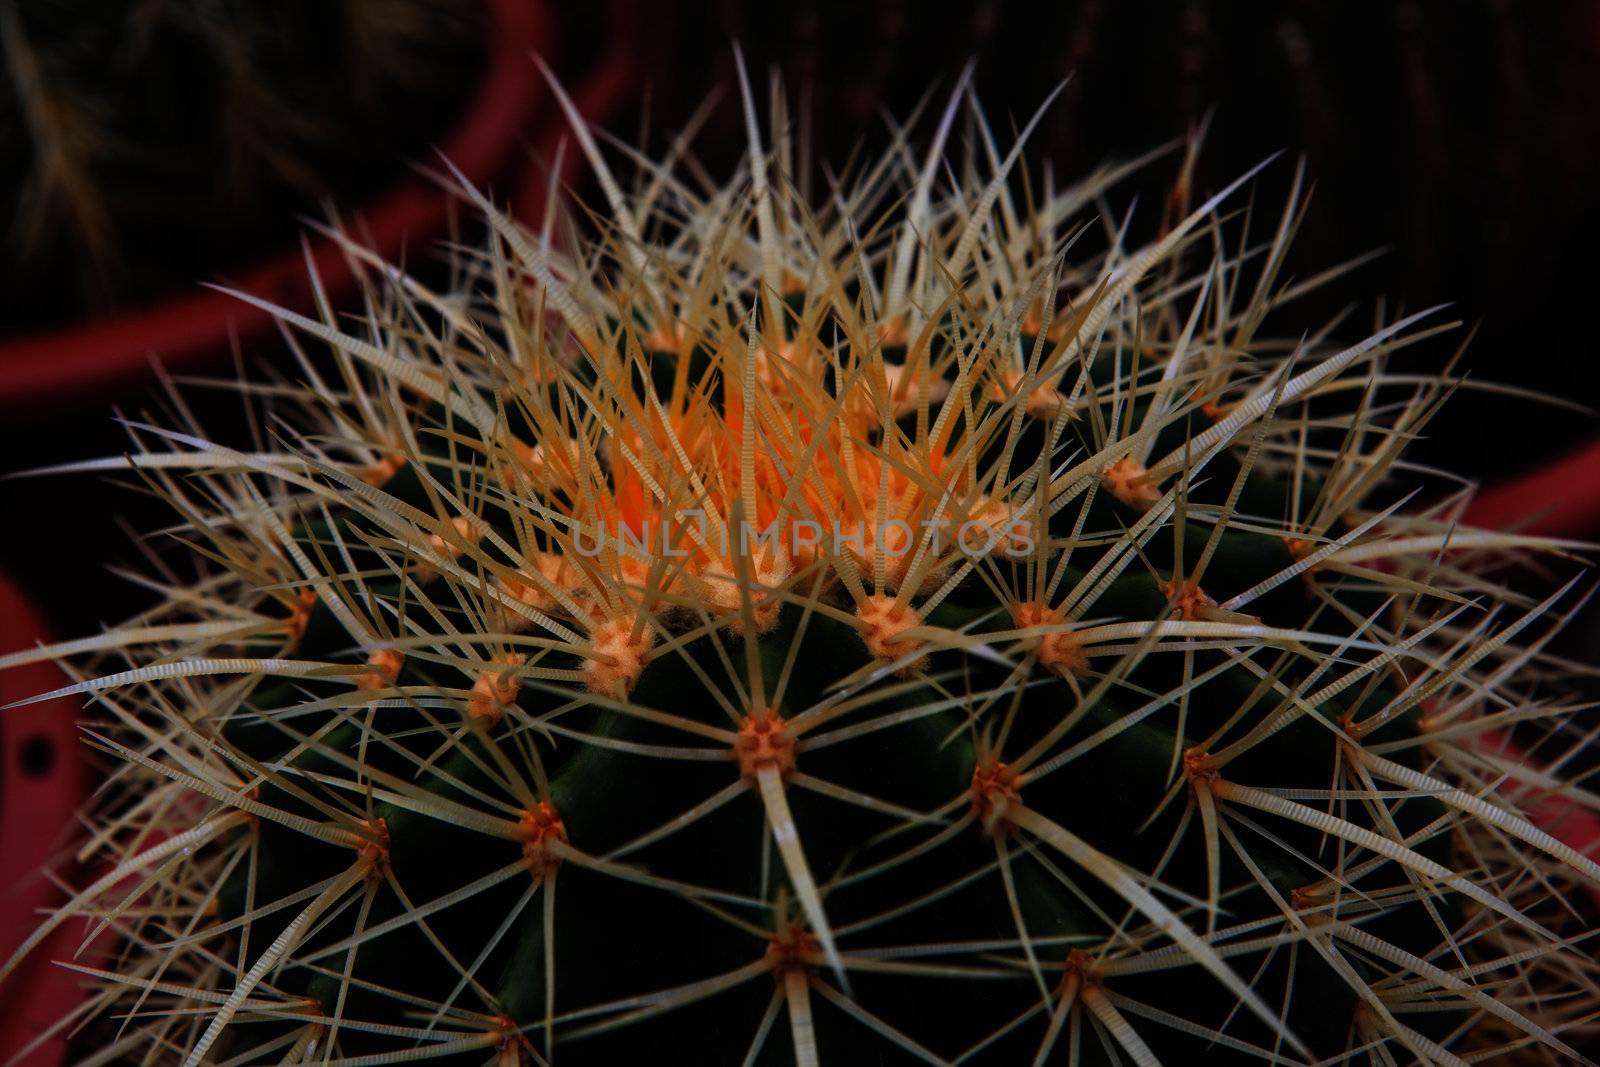 Cactus, extreme closeup at Cameron highlands, Malaysia